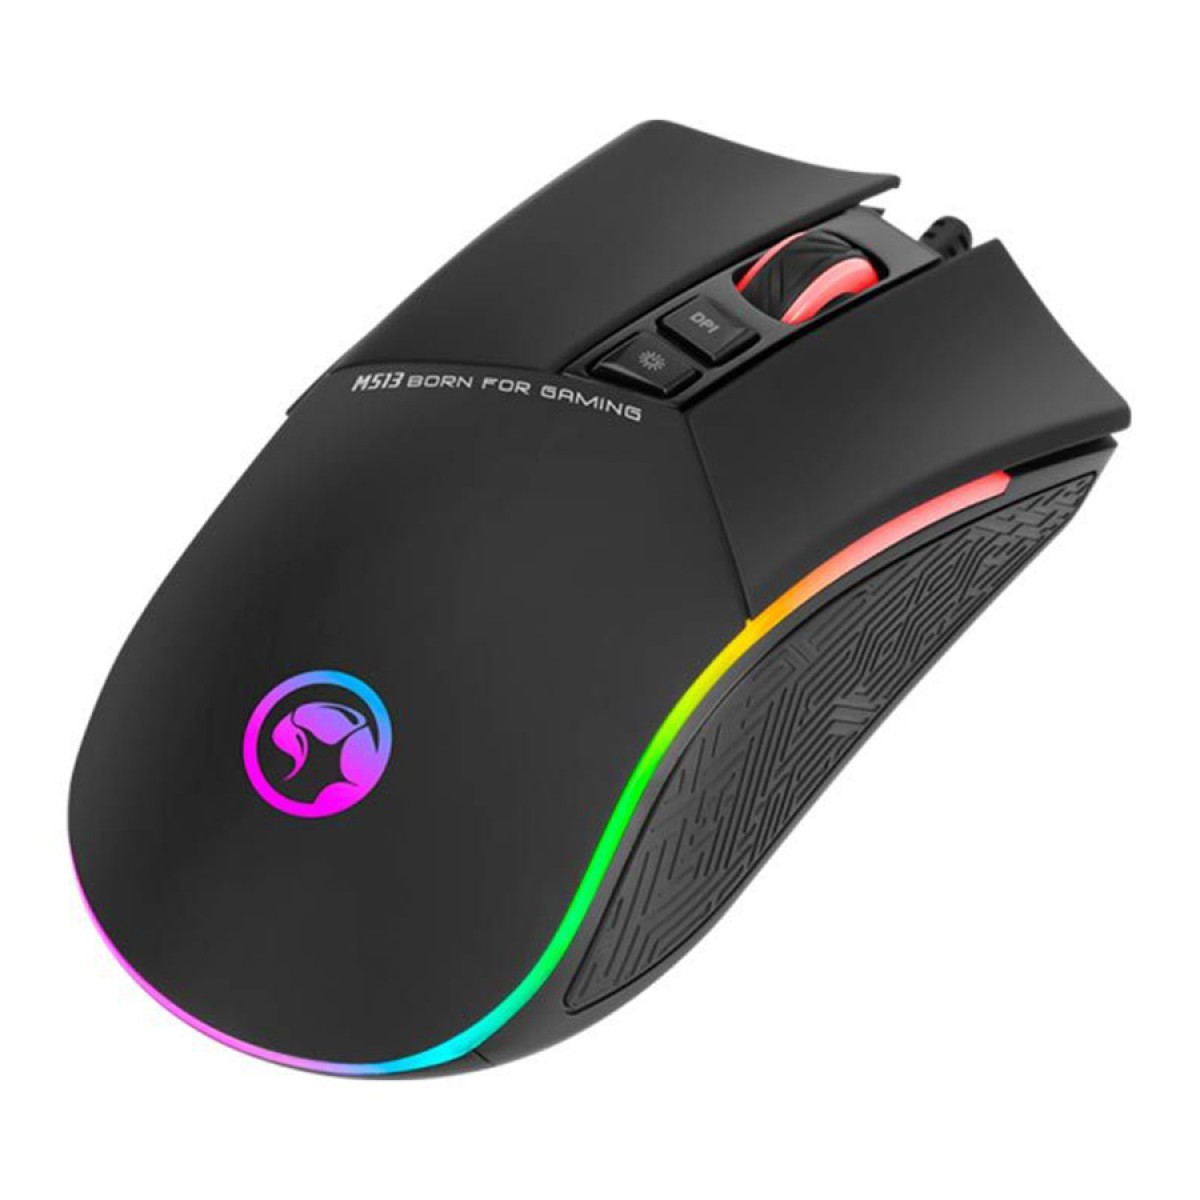 Mouse Gamer Marvo M513, 6400 DPI, 7 Botões, RGB, Black 